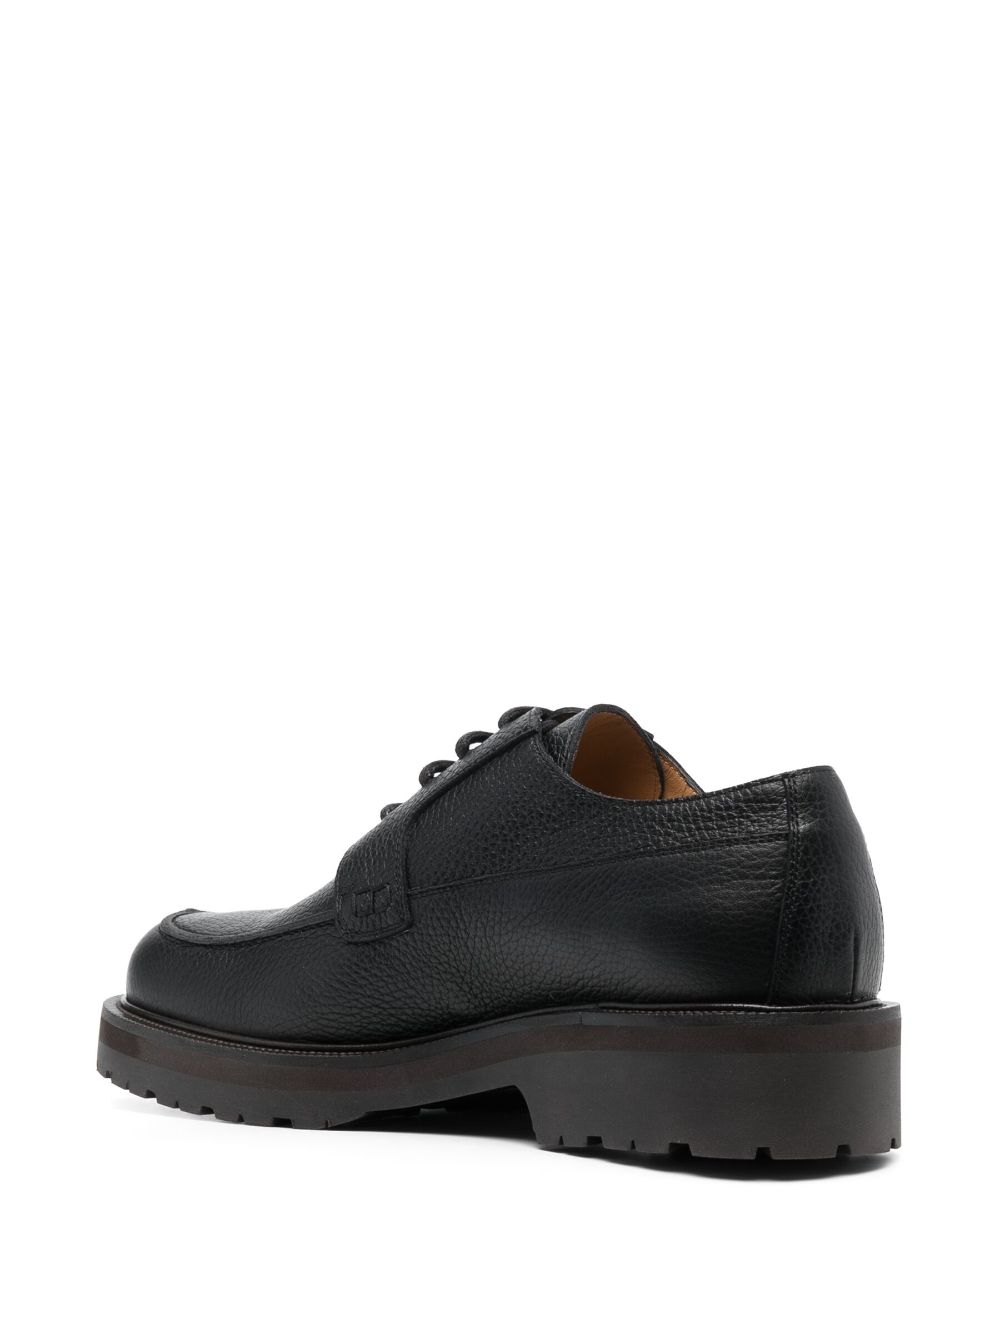 Black lace-up derby shoes - men - DRIES VAN NOTEN - divincenzoboutique.com